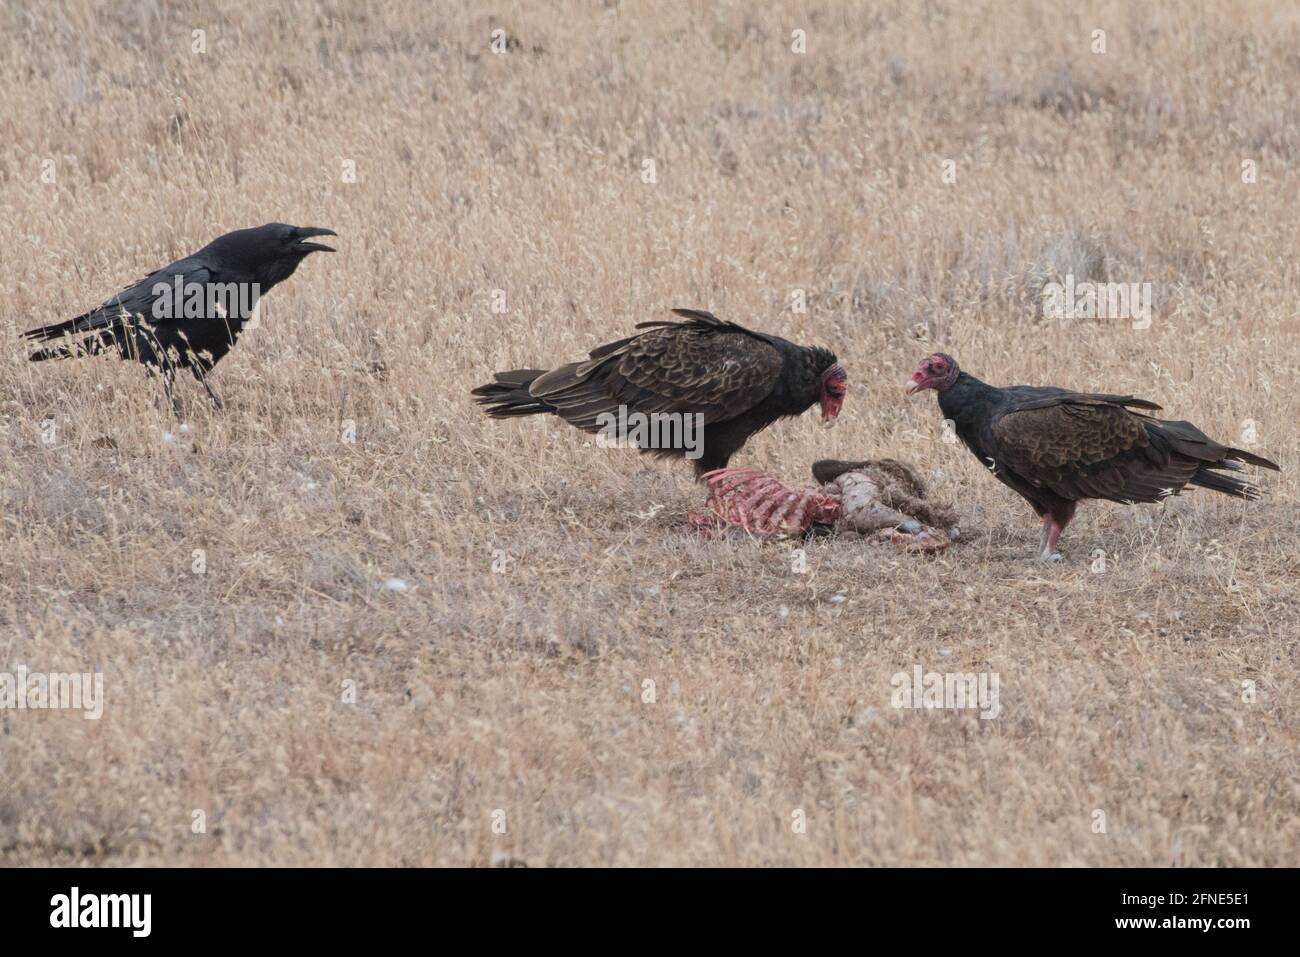 Ein Paar putengeier (Cathartes Aura) durchwühlte ein totes Tier in einer ariden Region Kaliforniens, während ein Rabe (Corvus corax) auf sich schaut. Stockfoto